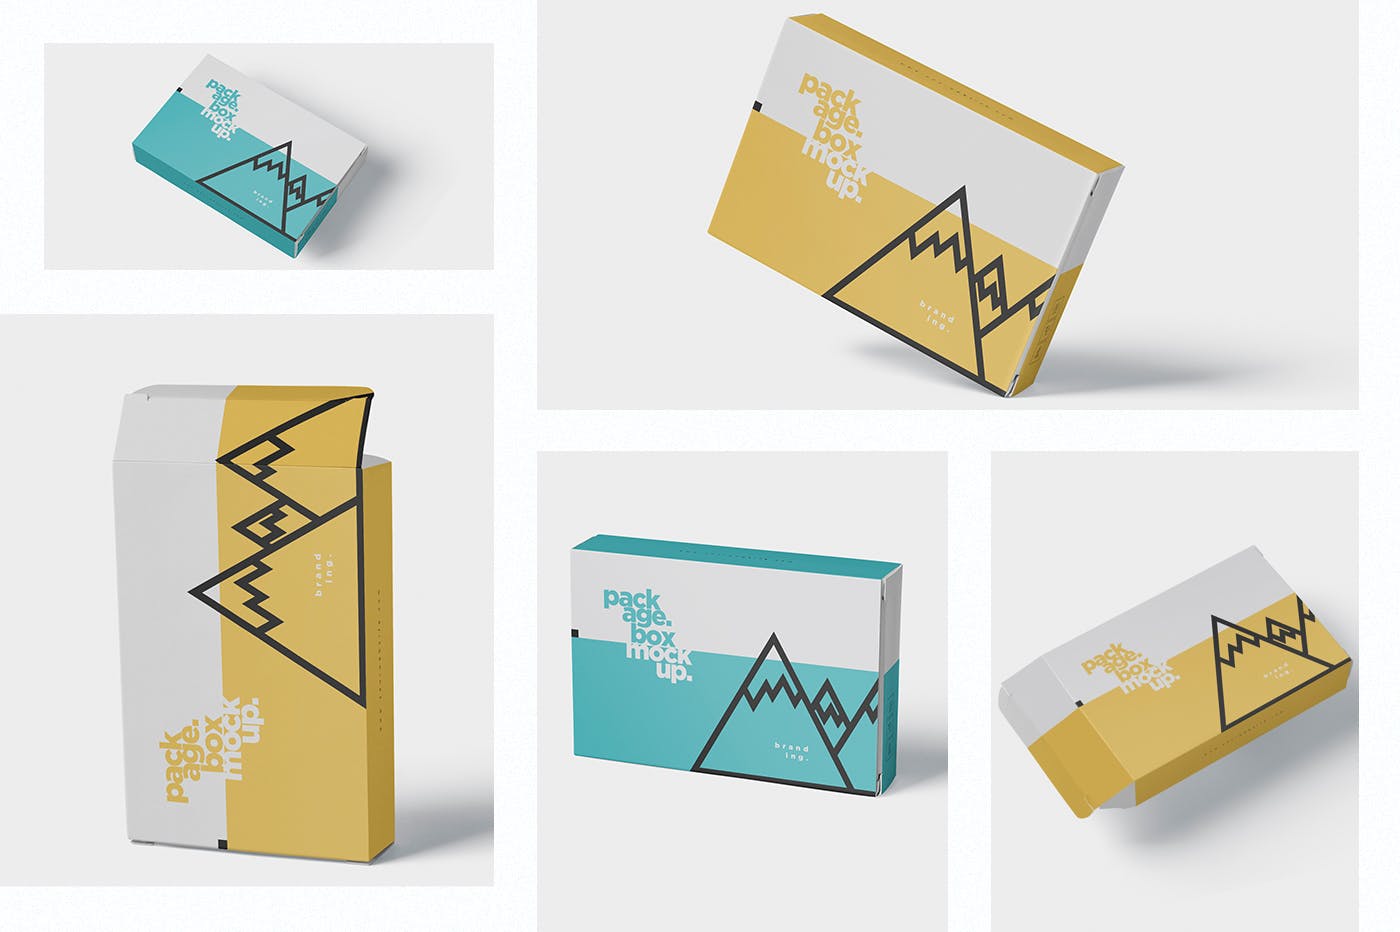 扑克牌大小扁平包装纸盒外观设计第一素材精选模板 Package Box Mock-Up – Wide – Flat Rectangle Shape插图(1)